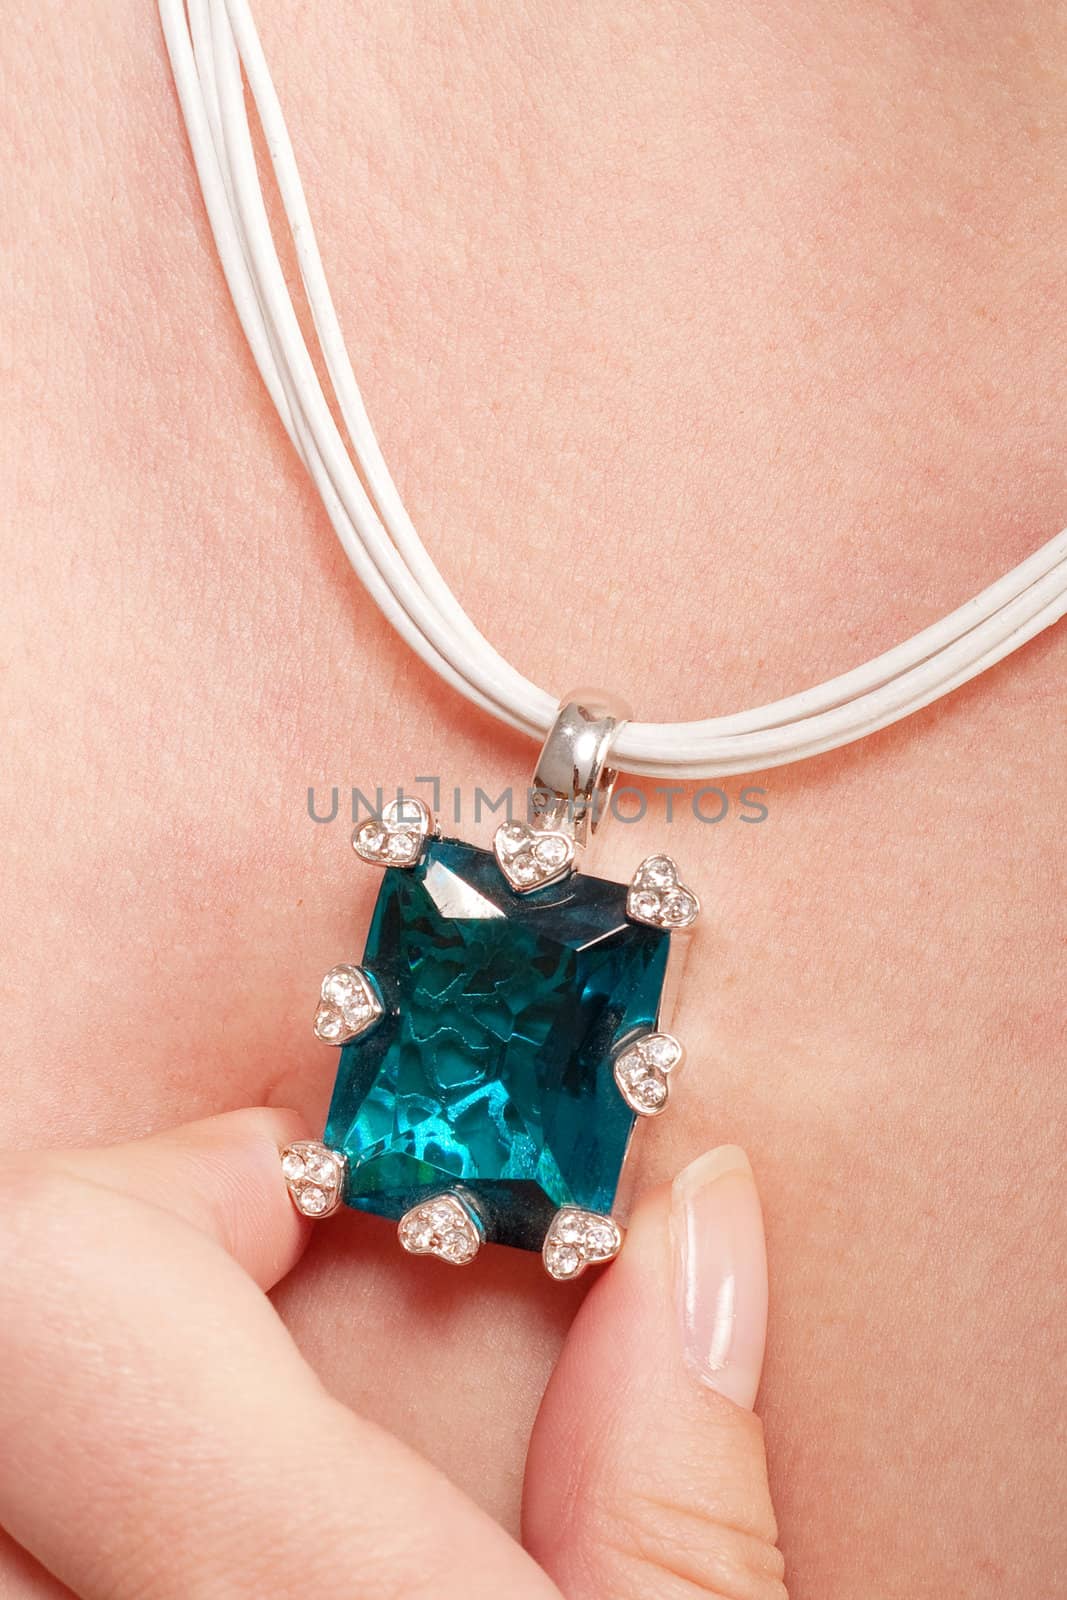 Necklace with blue gem by igor_stramyk